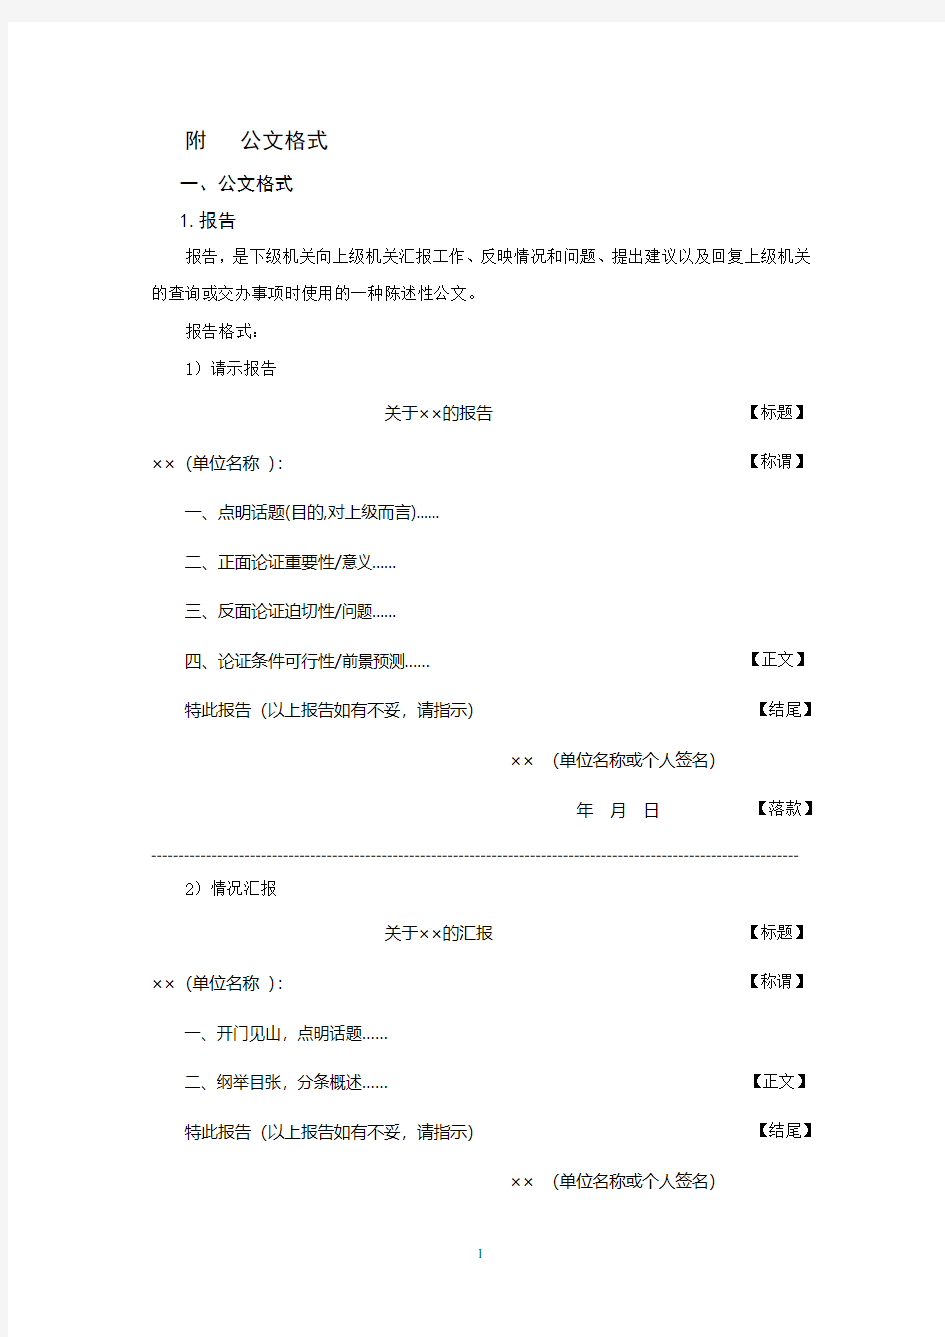 申论公文格式(史上最全)行者(2020年整理).pdf